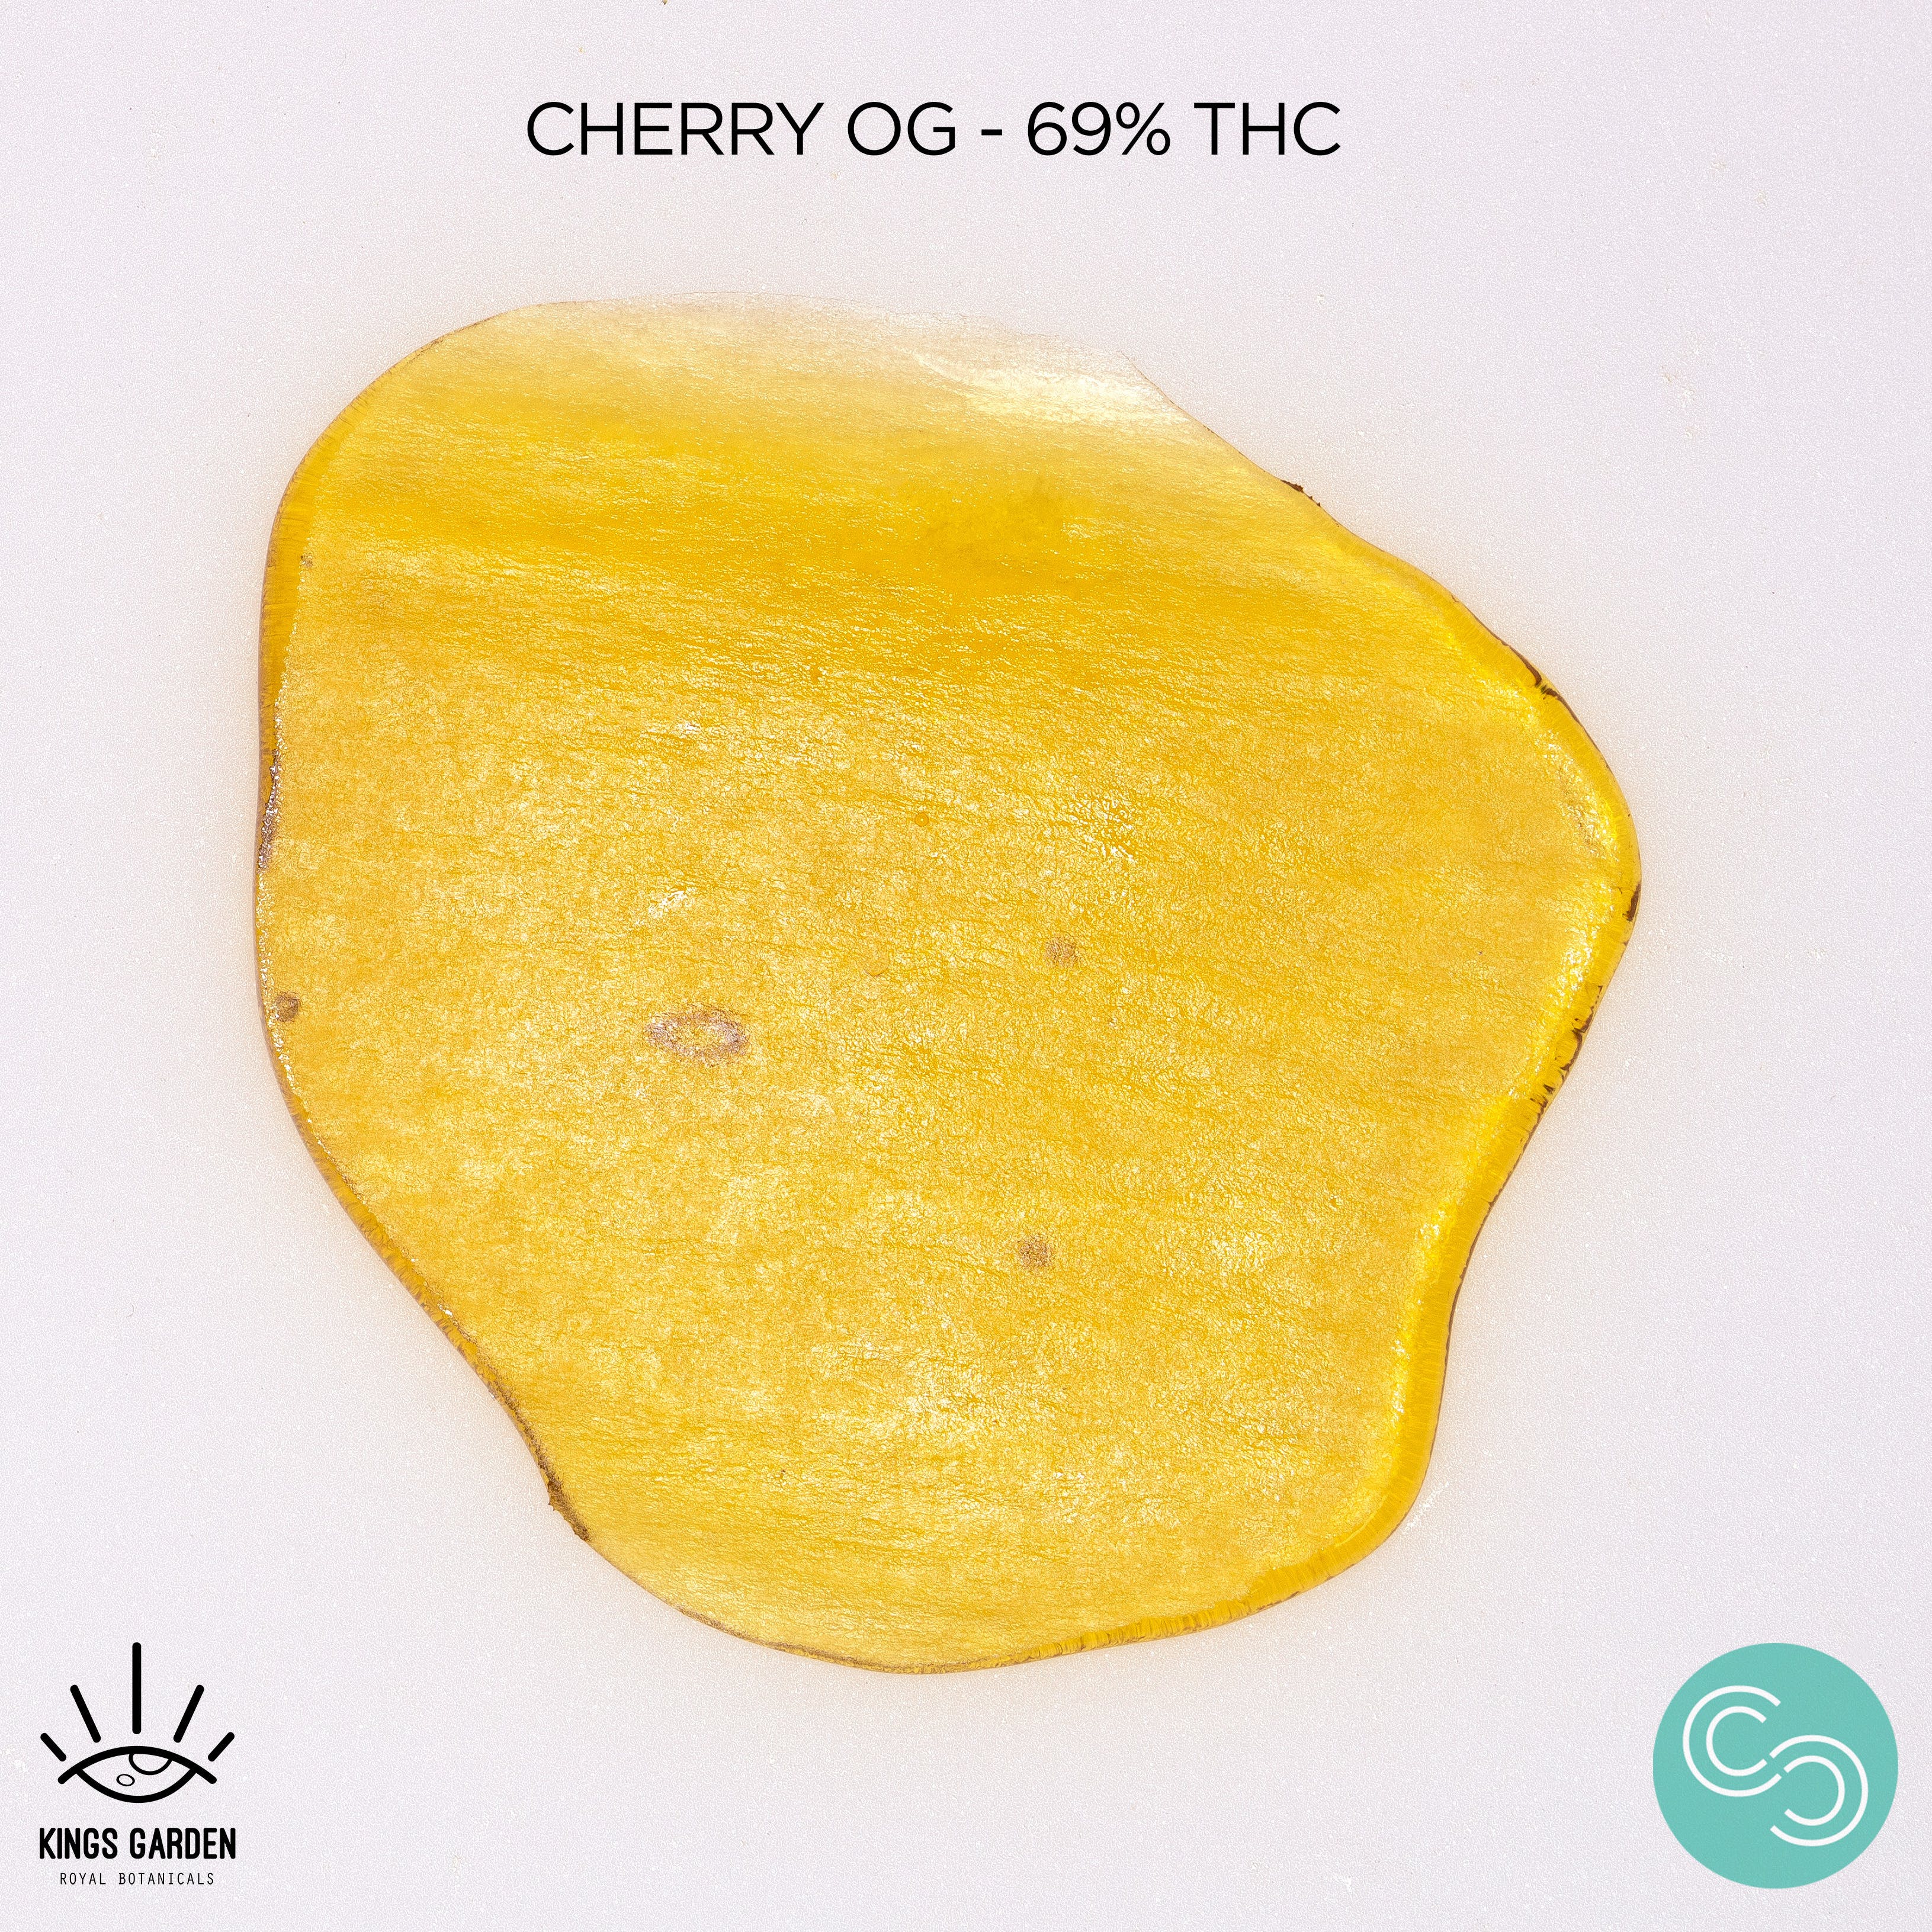 Kings Garden - Cherry OG - 69% THC